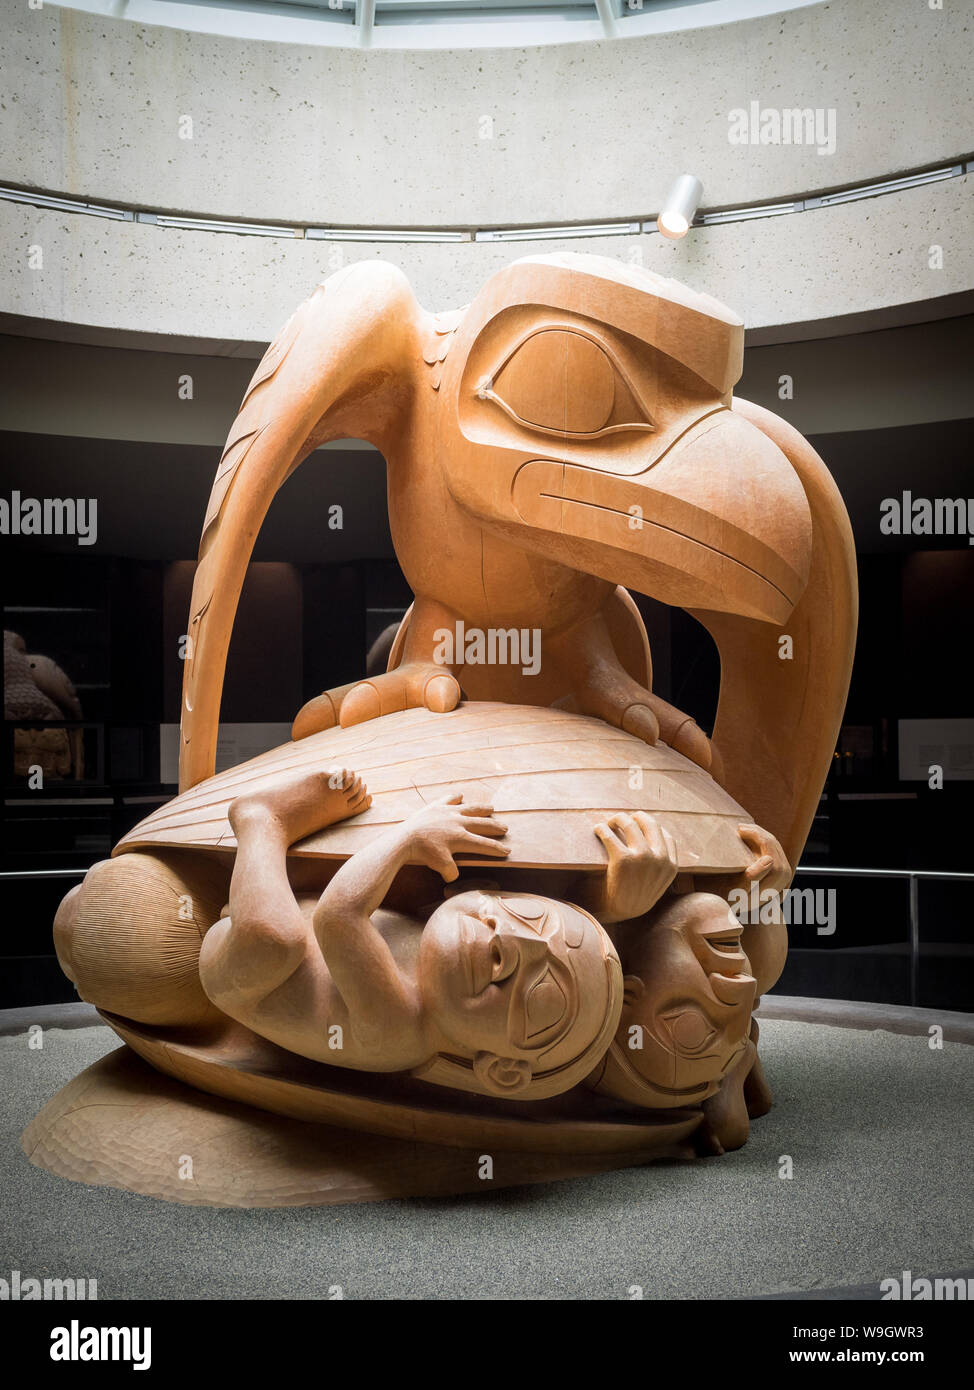 Le Corbeau et les premiers hommes, une sculpture de l'artiste haïda Bill Reid, dans la rotonde de l'Université de la Colombie-Britannique) Musée d'anthropologie. Banque D'Images